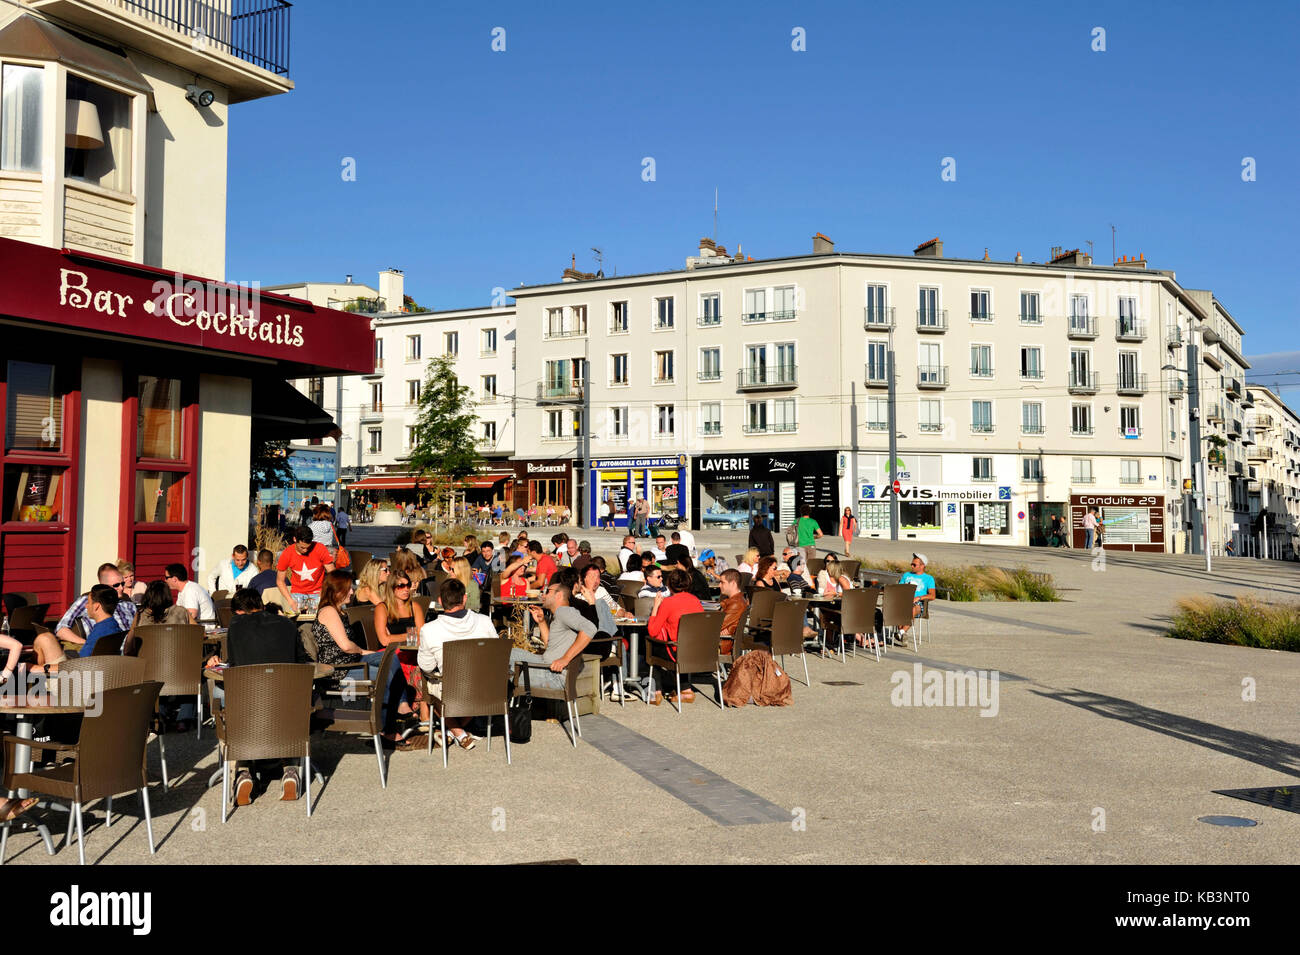 France, Finistere, Brest, terrace of restaurant along rue de Siam Stock Photo